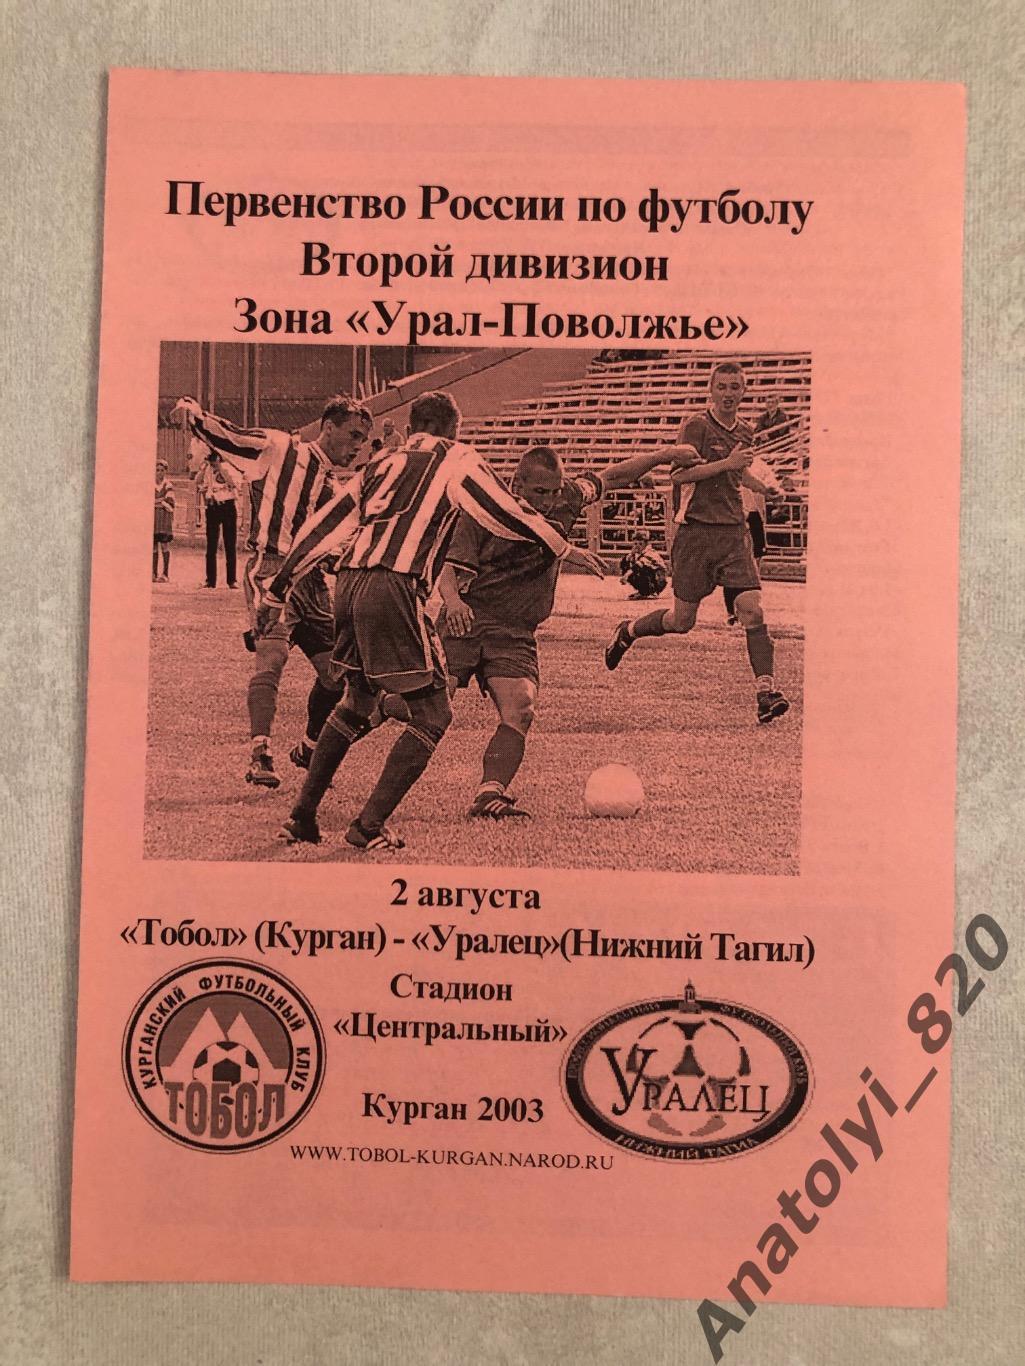 Тобол Курган - Уралец Нижний Тагил, 02.08.2003